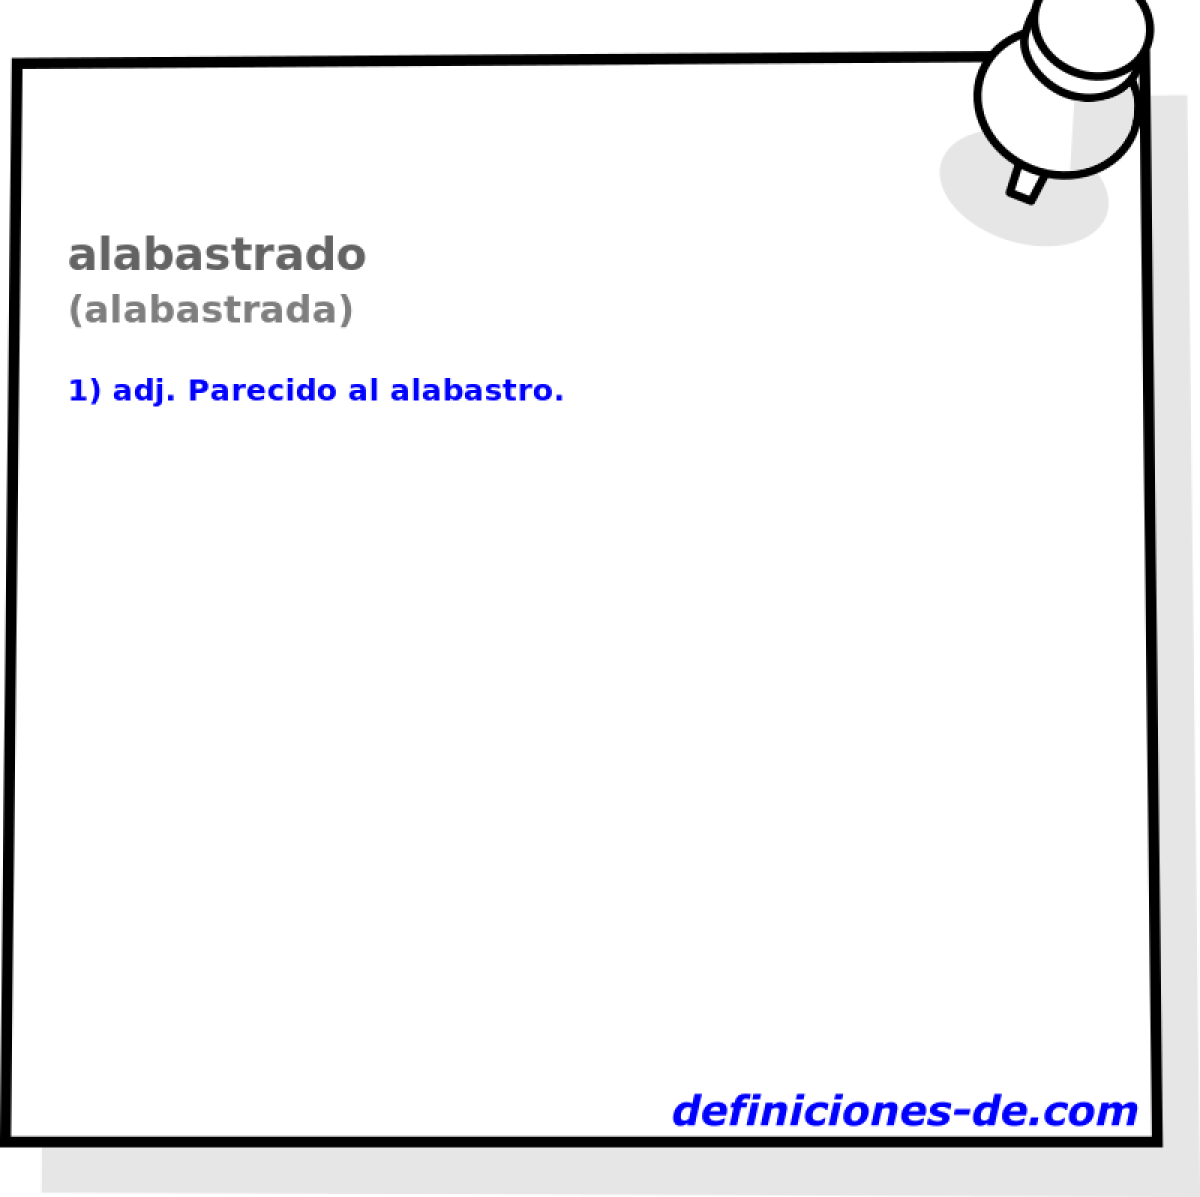 alabastrado (alabastrada)